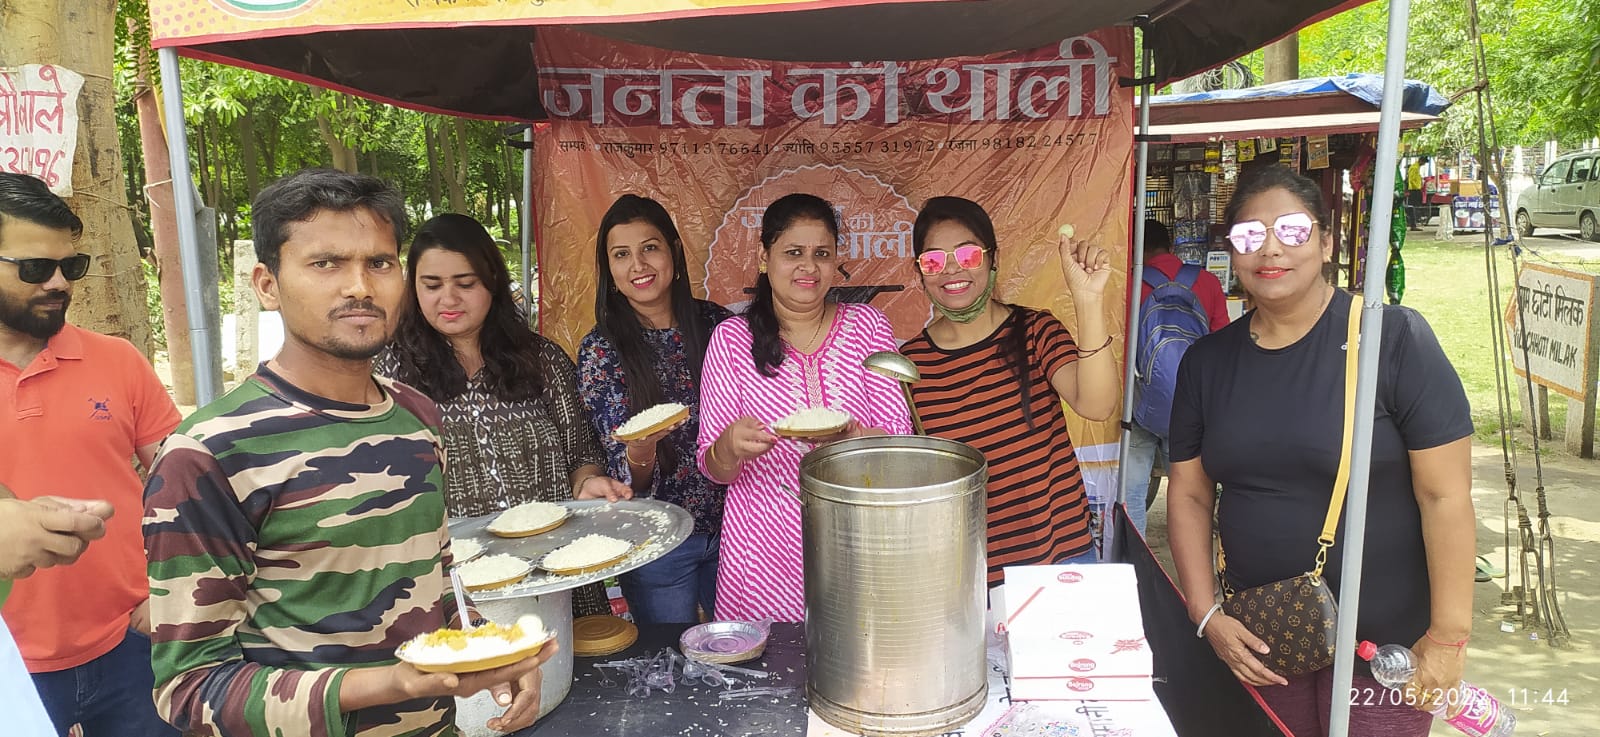 212 लोगों ने जनता की थाली के राजमा चावल और रसगुल्ले खाए